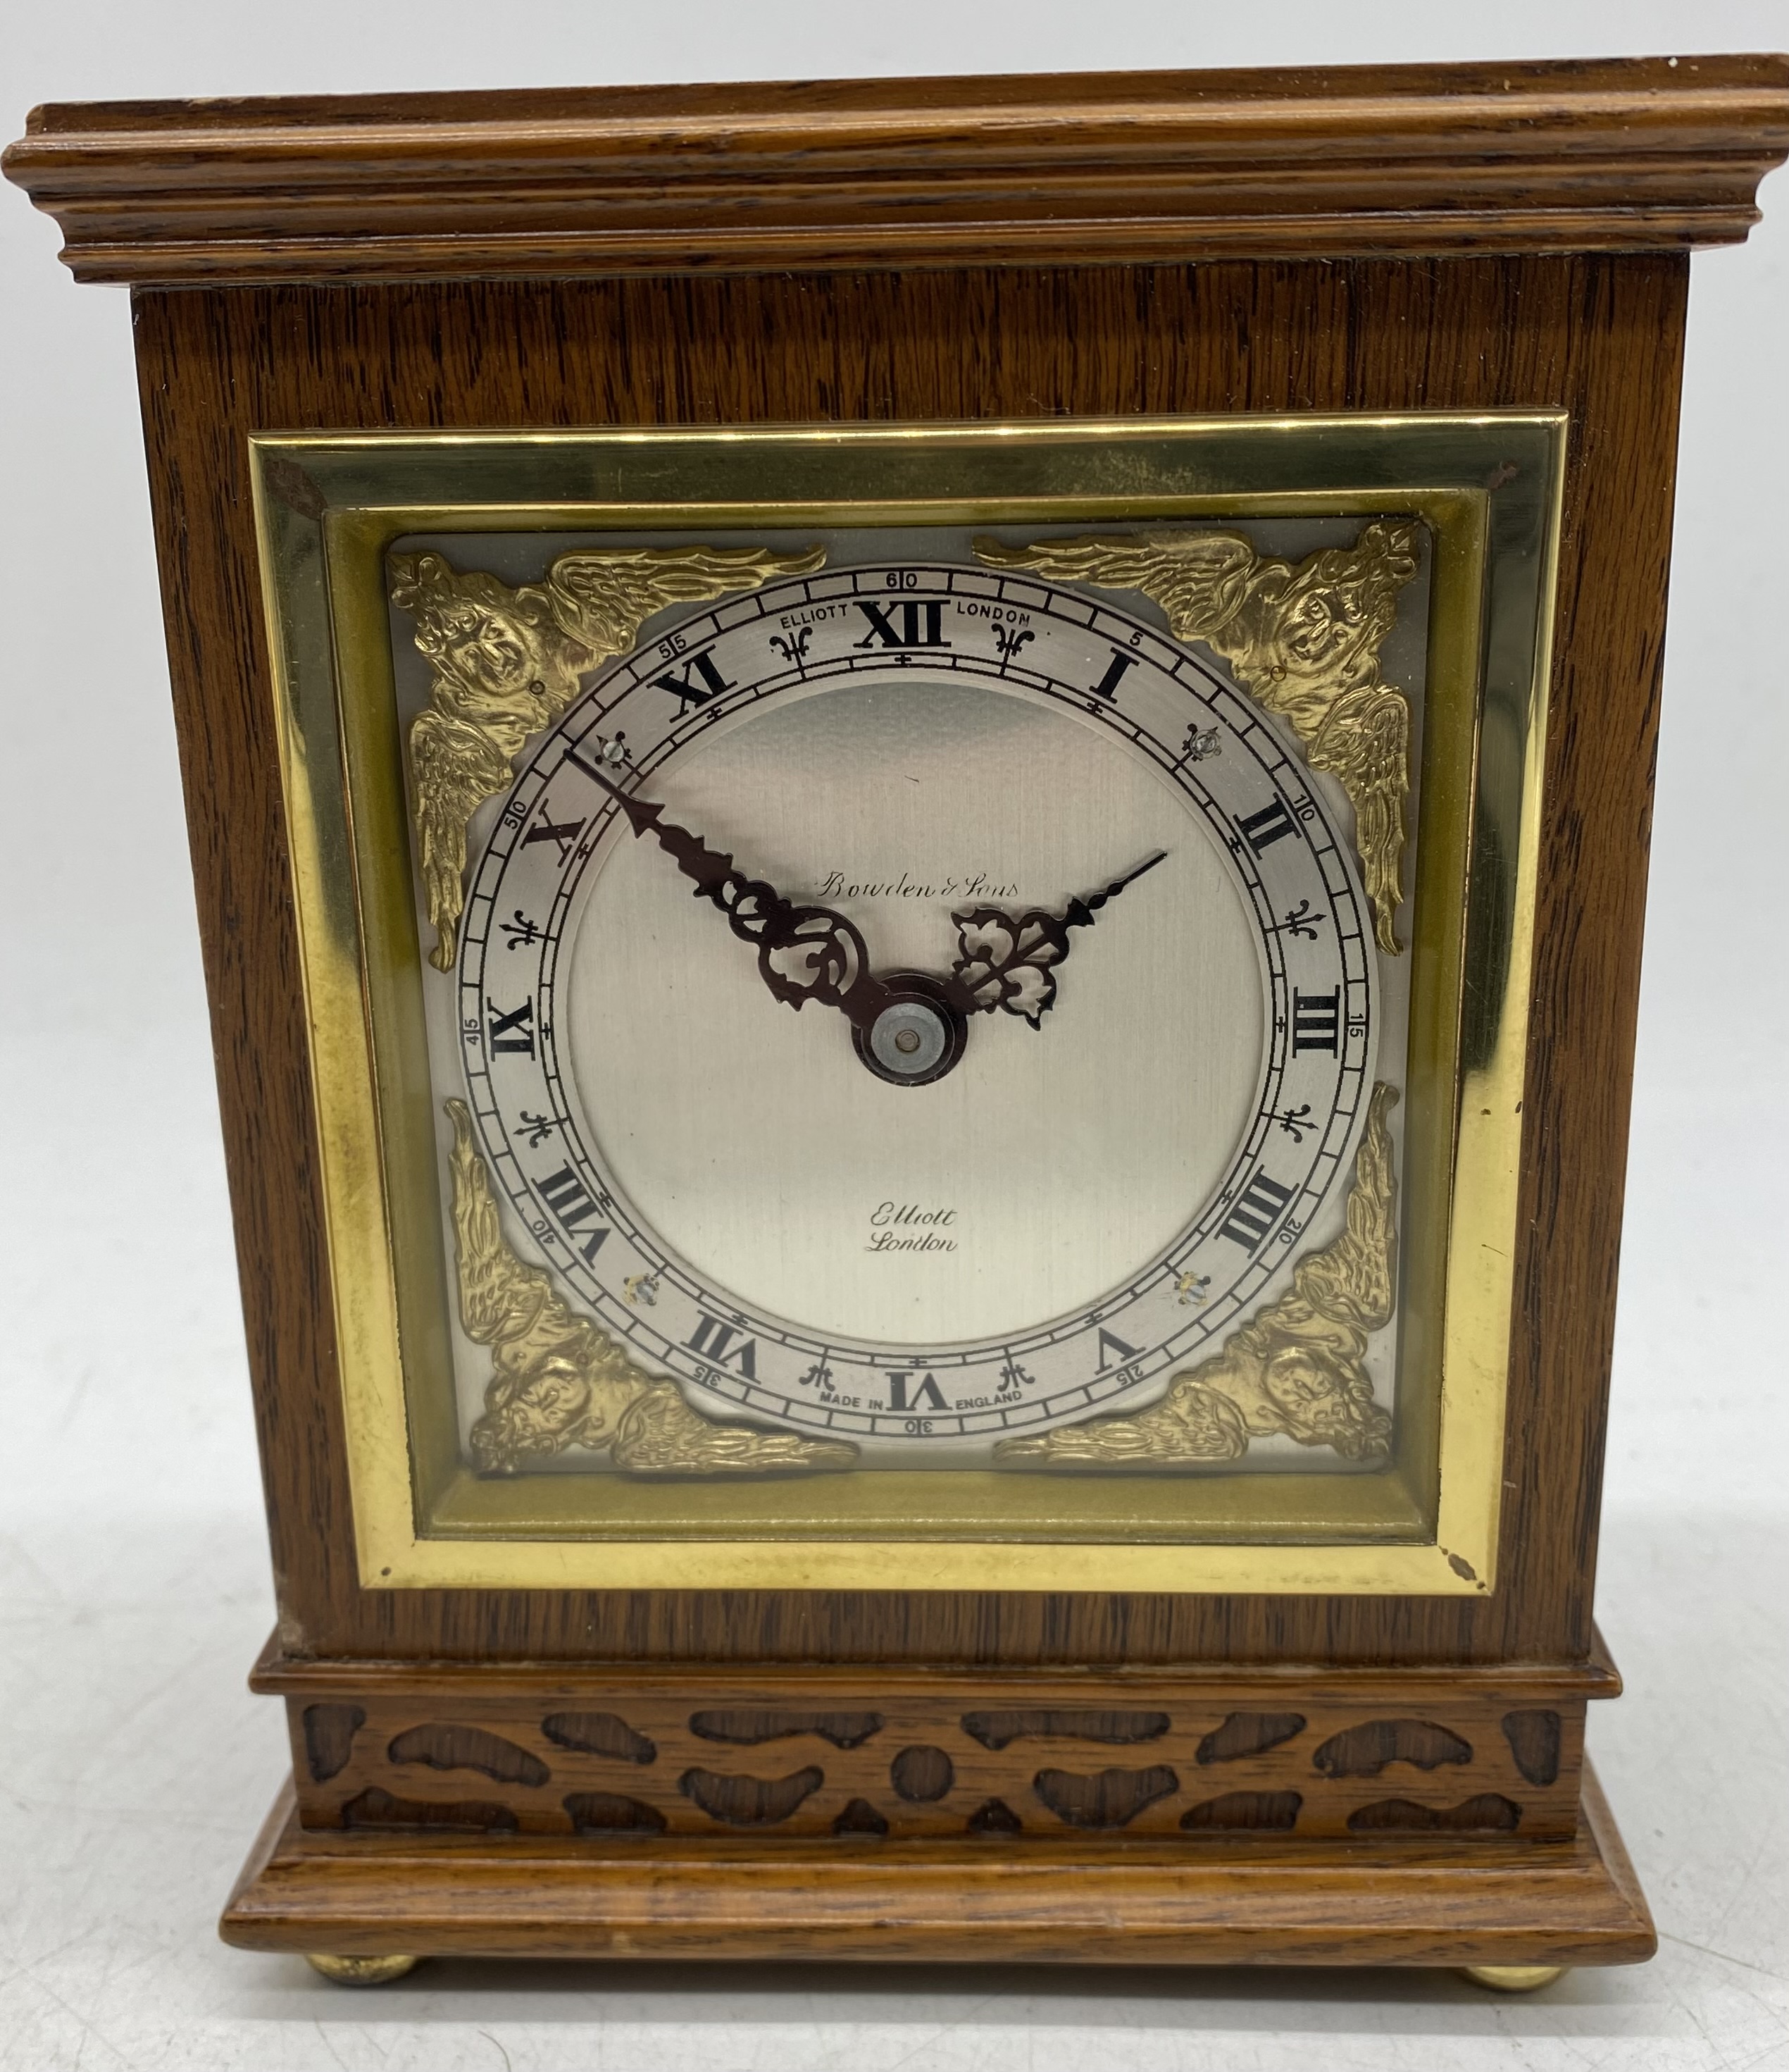 An Elliott of London small bracket clock in oak case along with a brass Swiza alarm clock - Image 2 of 9